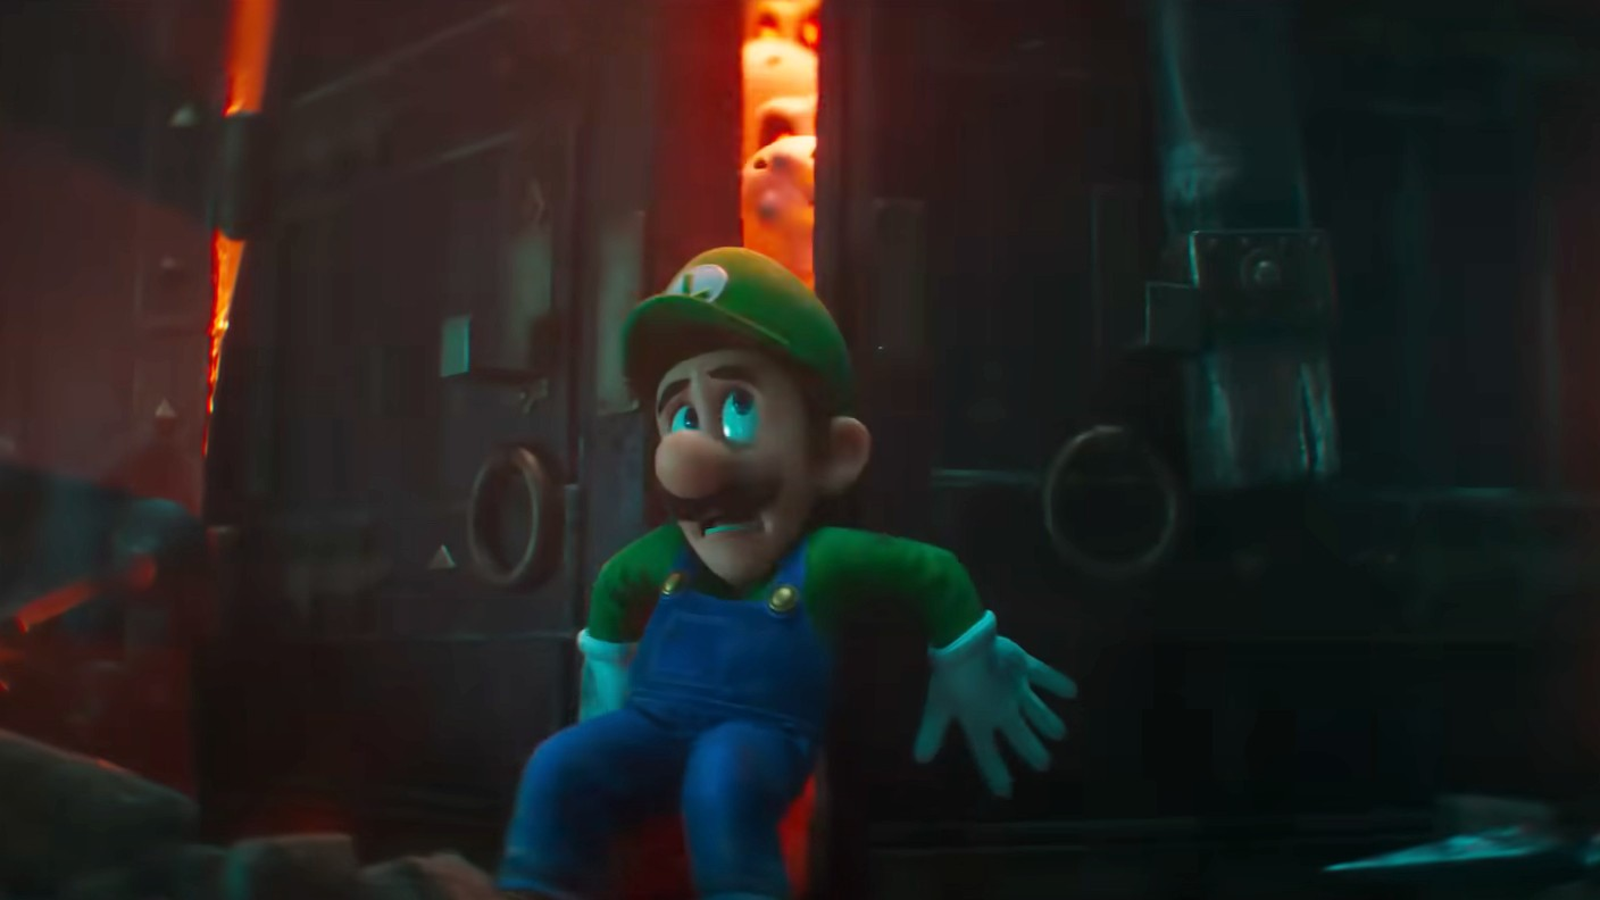 Super Mario Bros. Movie' Cast: Voice Actors Behind Mario, Luigi